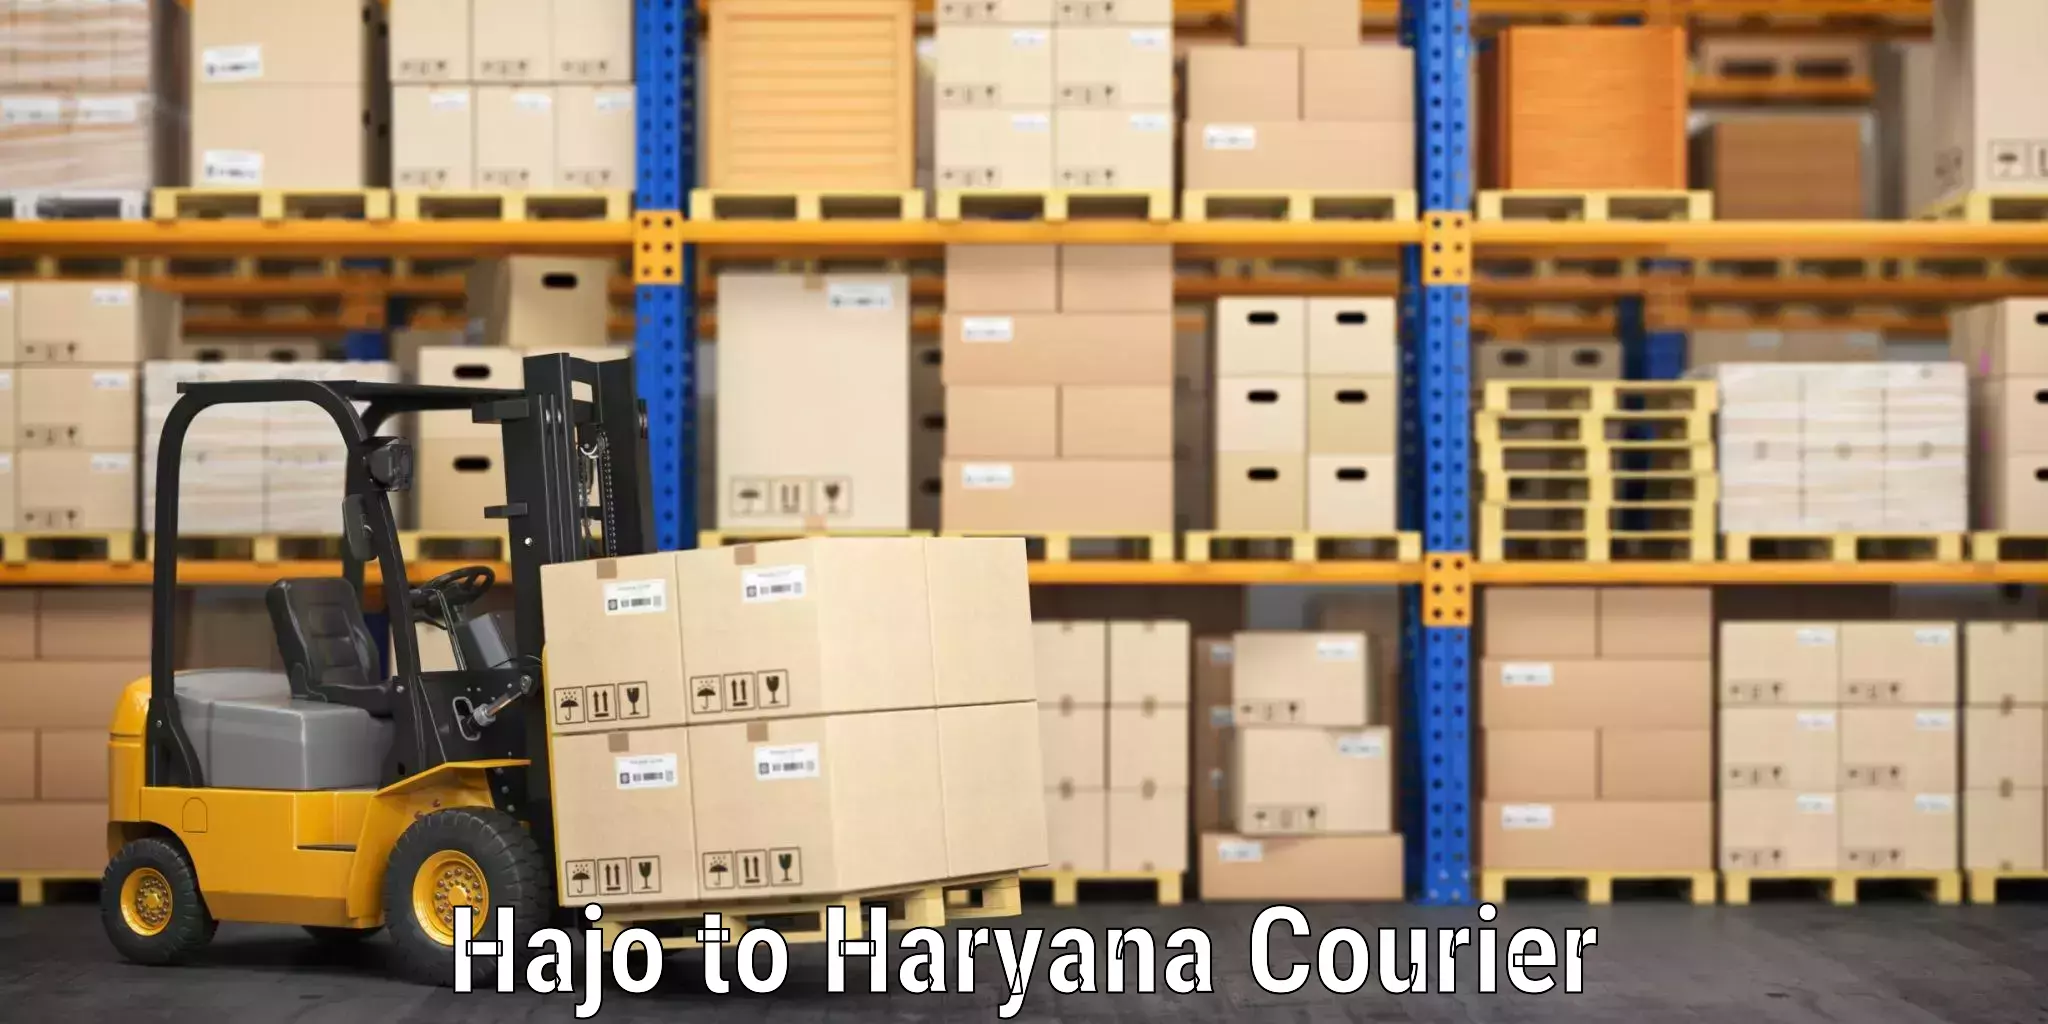 Luggage shipping service Hajo to Haryana